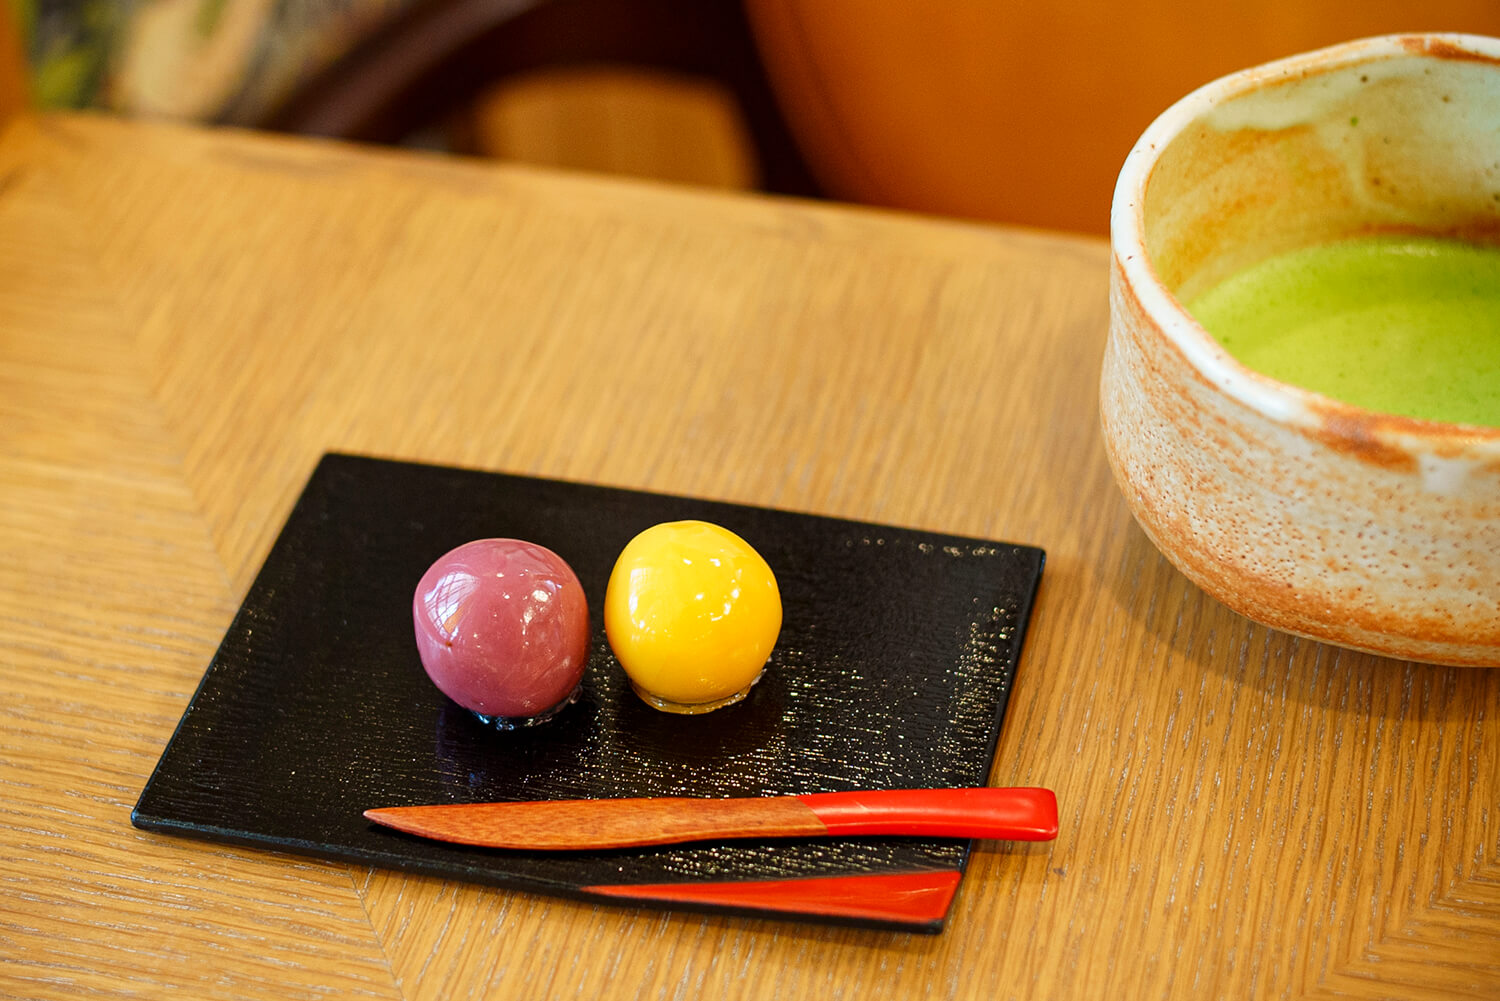 「あんこ玉とお抹茶」710円。左から、あんこ玉の苺とみかん